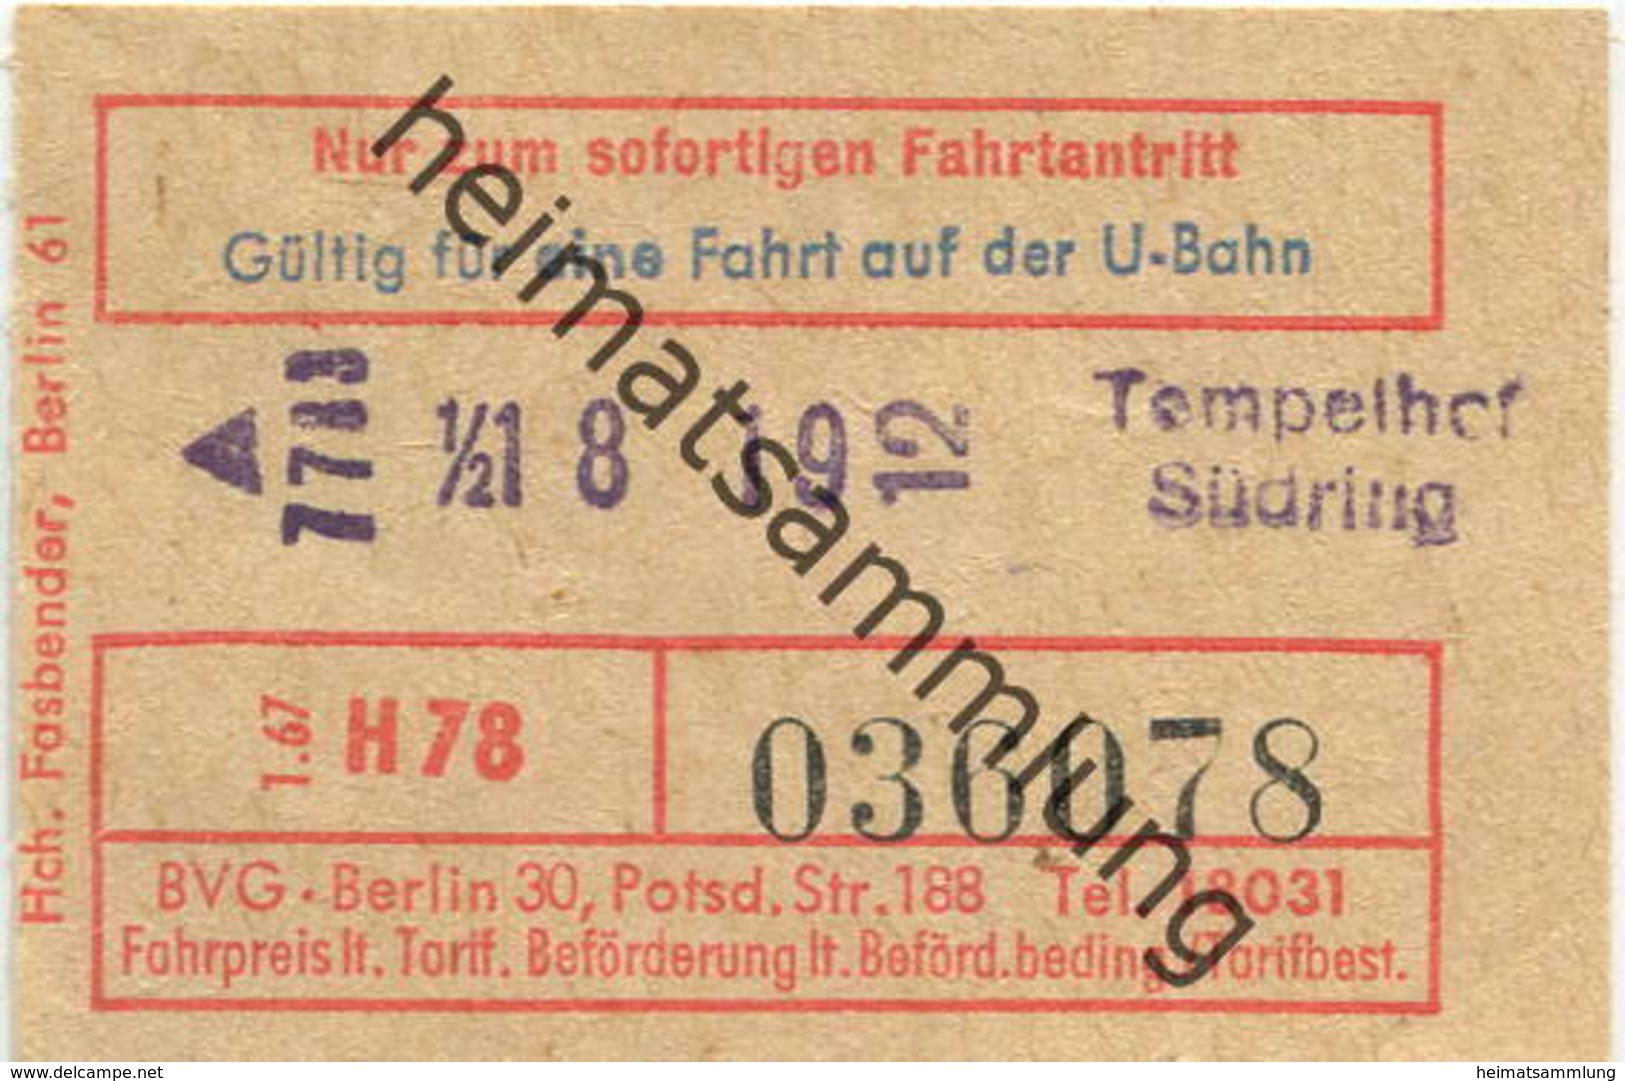 Deutschland - Berlin - Gültig Für Eine Fahrt Auf Der U-Bahn - Fahrschein 1967 - Tempelhof Südring - Europa